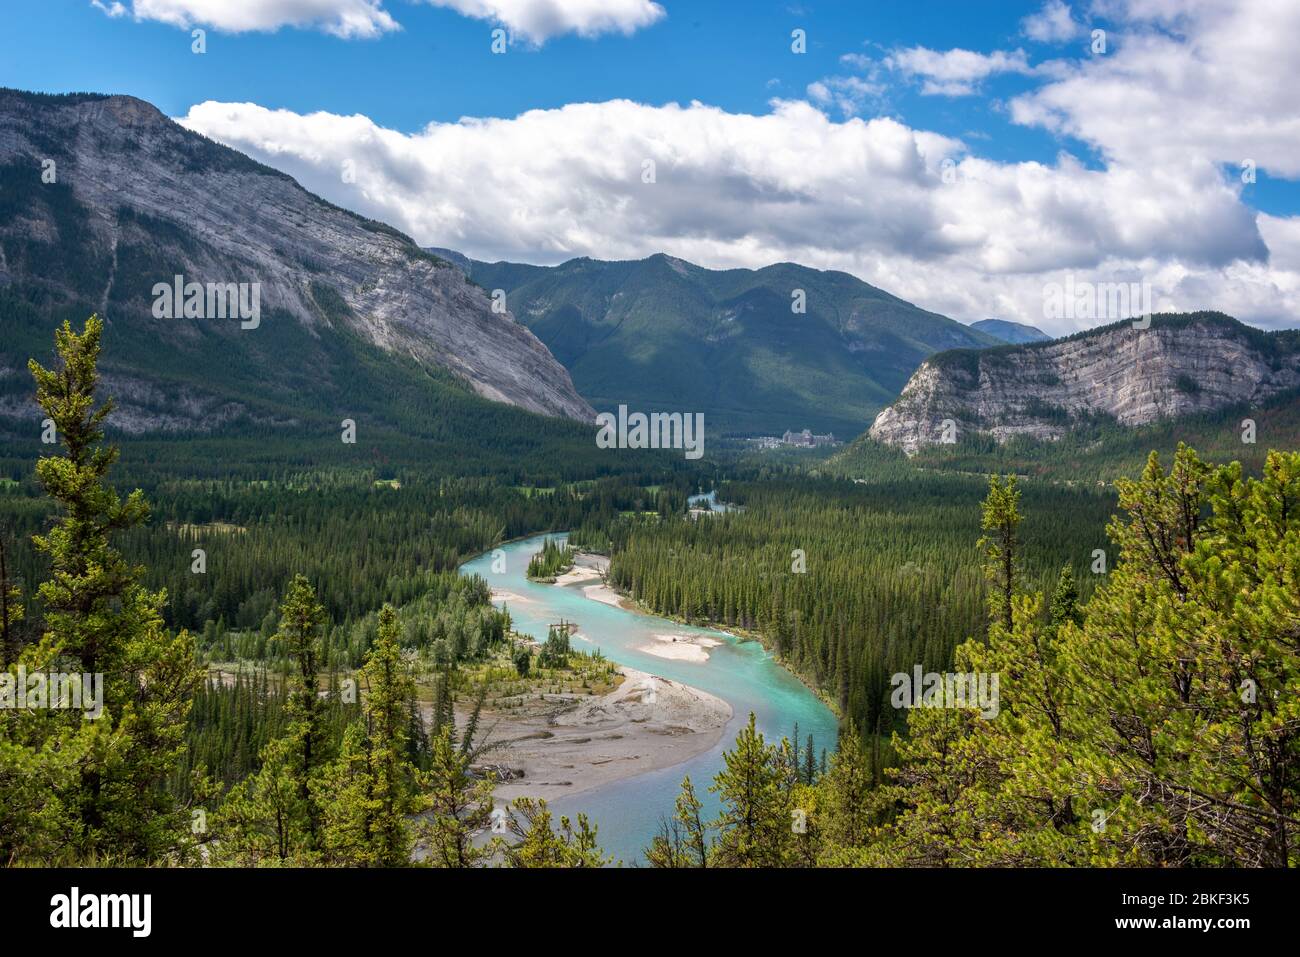 Vue aérienne de la vallée de la rivière Bow, parc national Banff, Alberta, Canada Banque D'Images